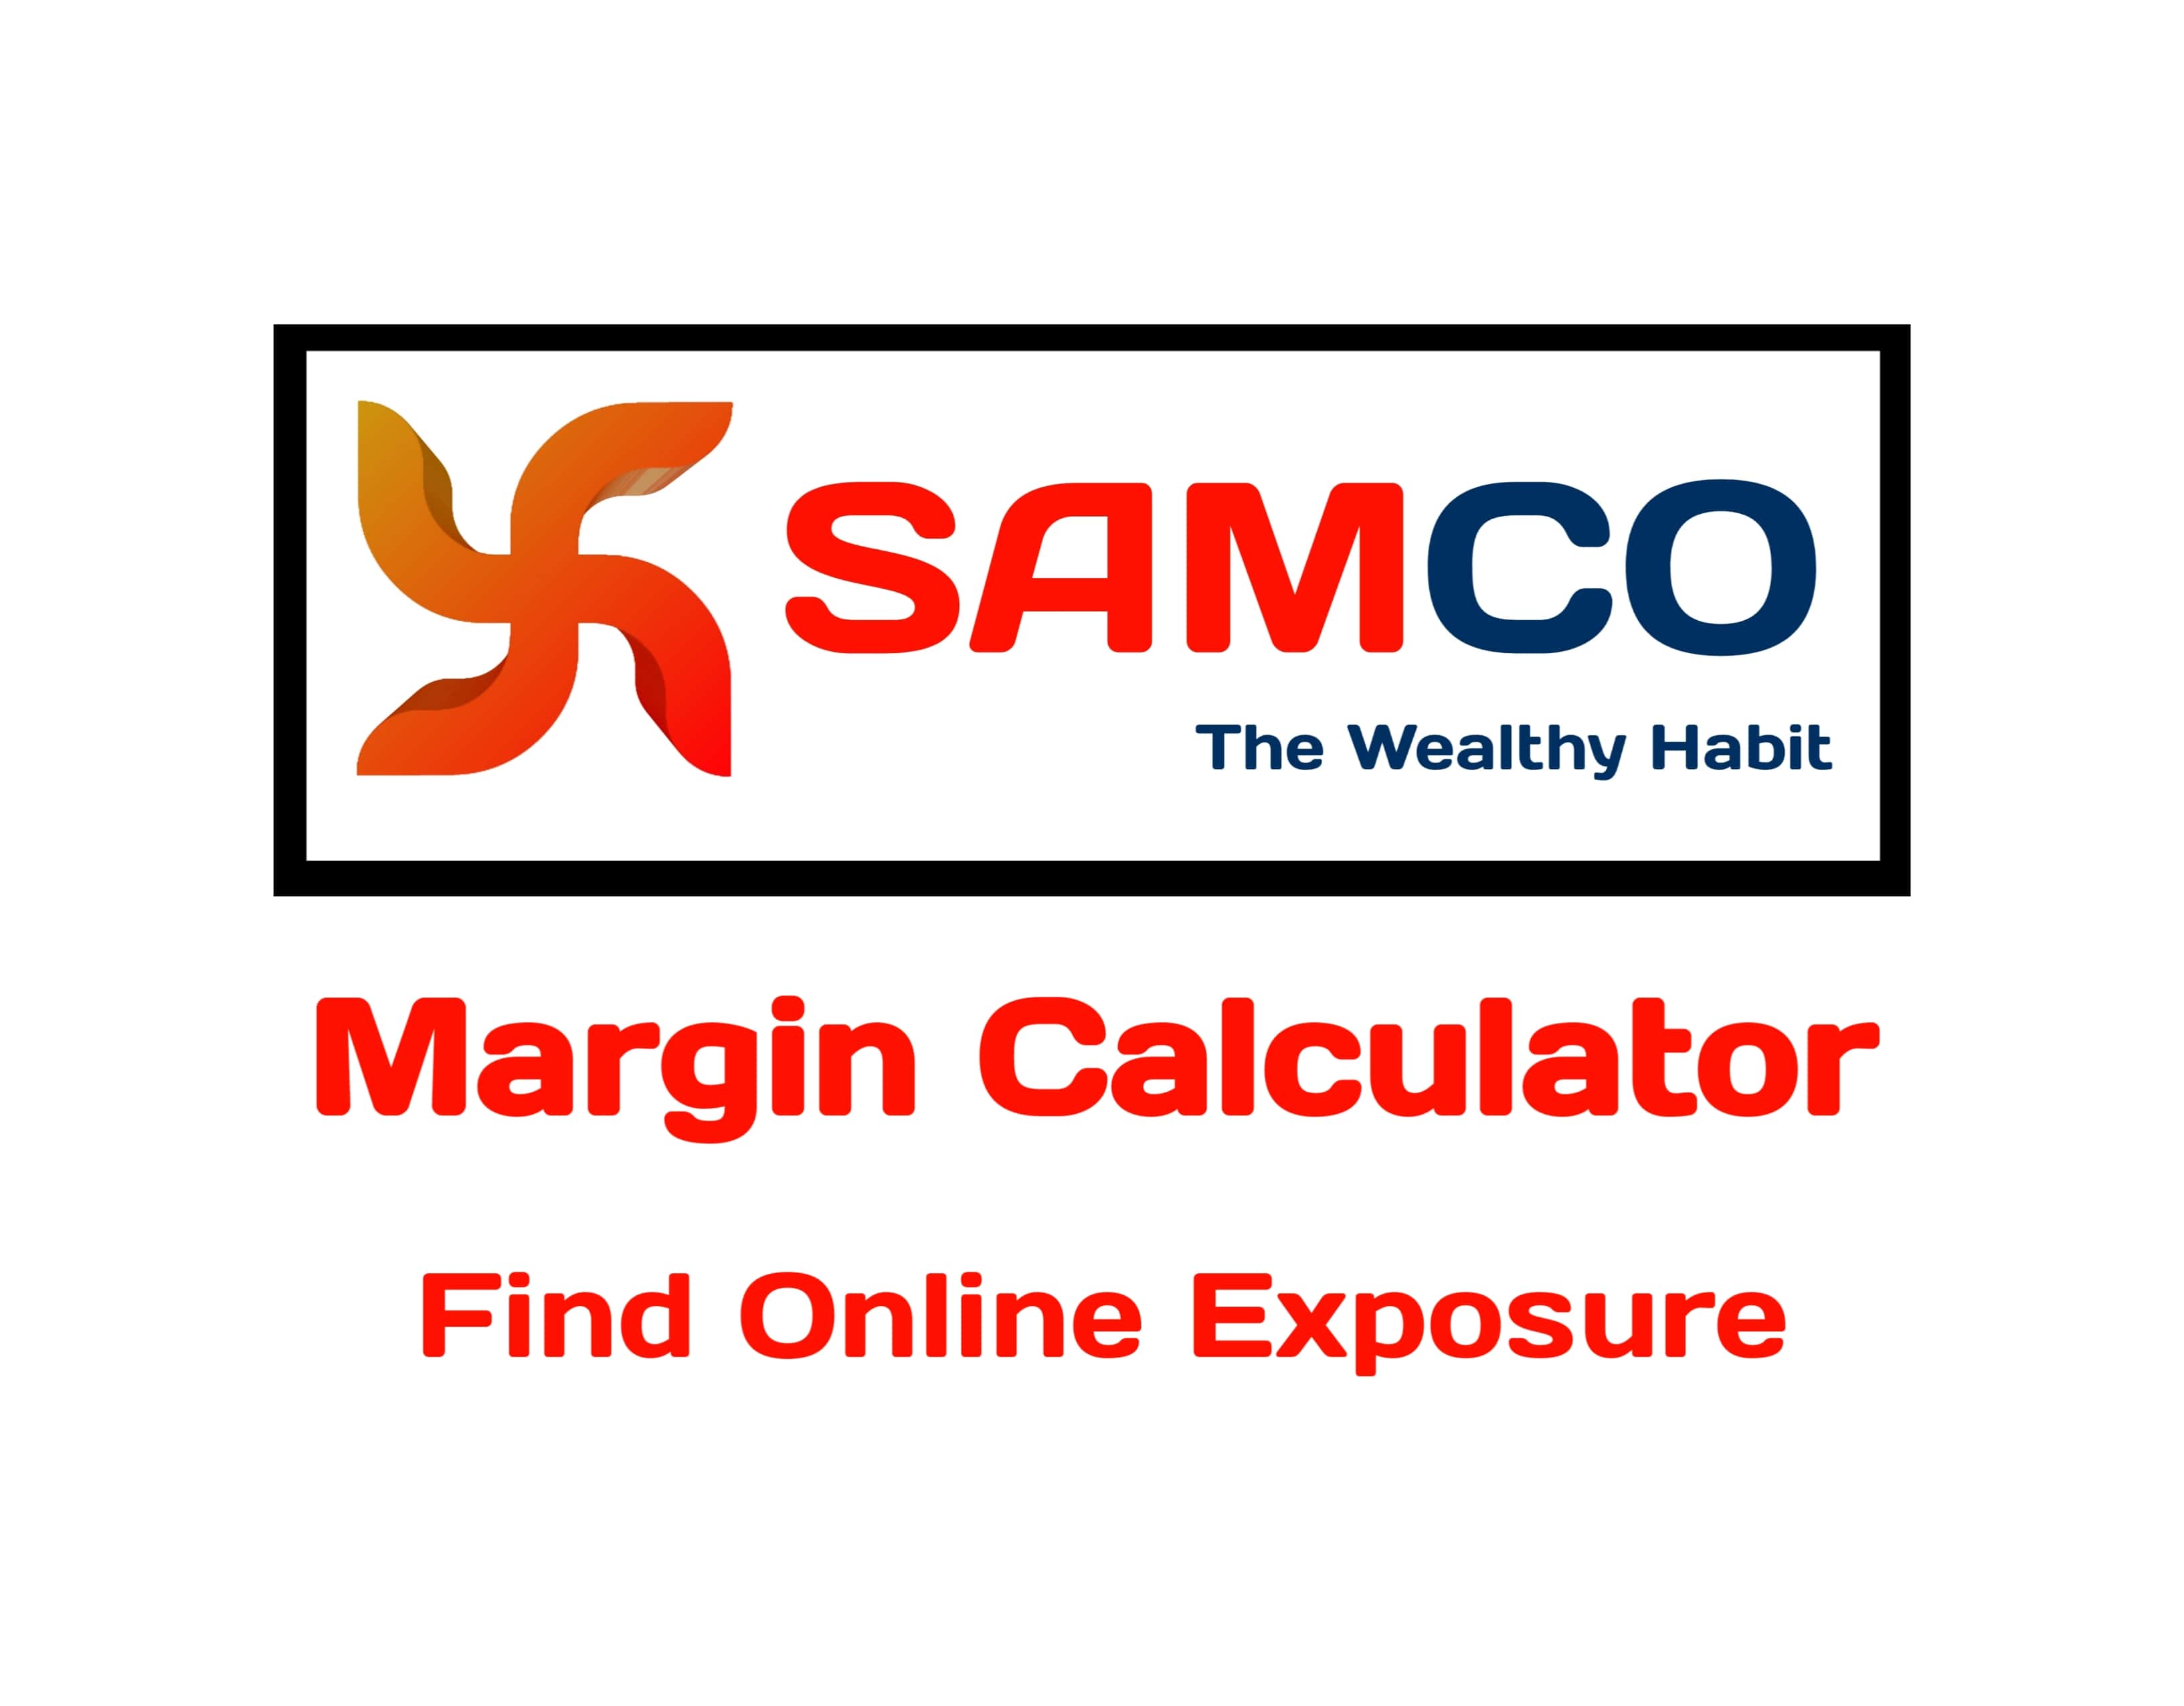 SAMCO Margin Calculator